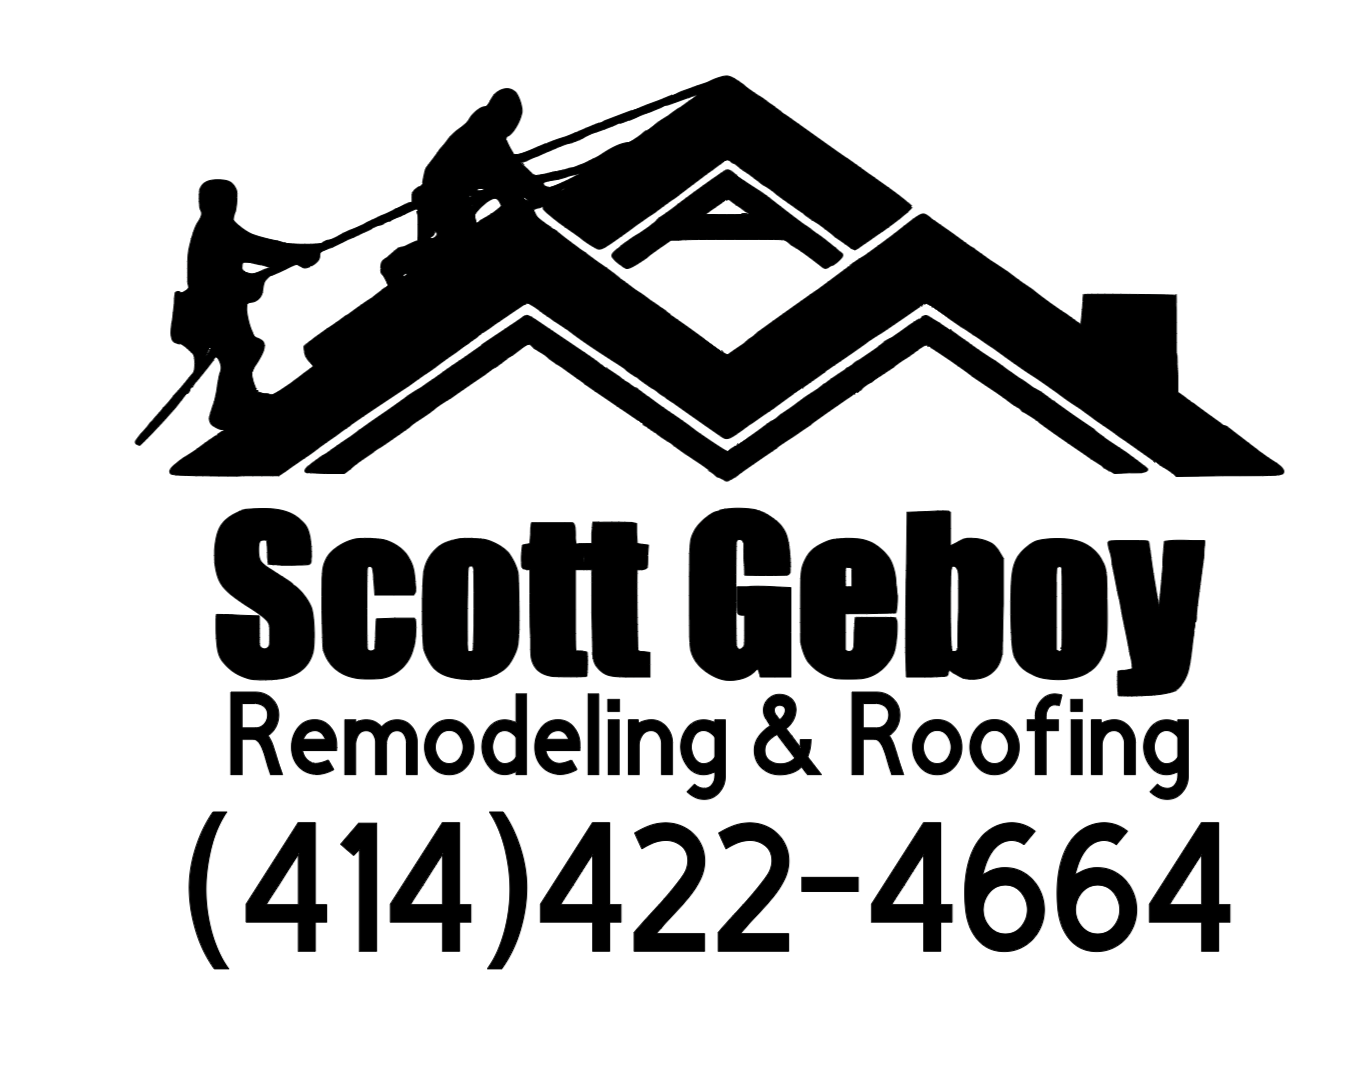 Scott Geboy Remodeling and Roofing LLC - Muskego, WI - Nextdoor